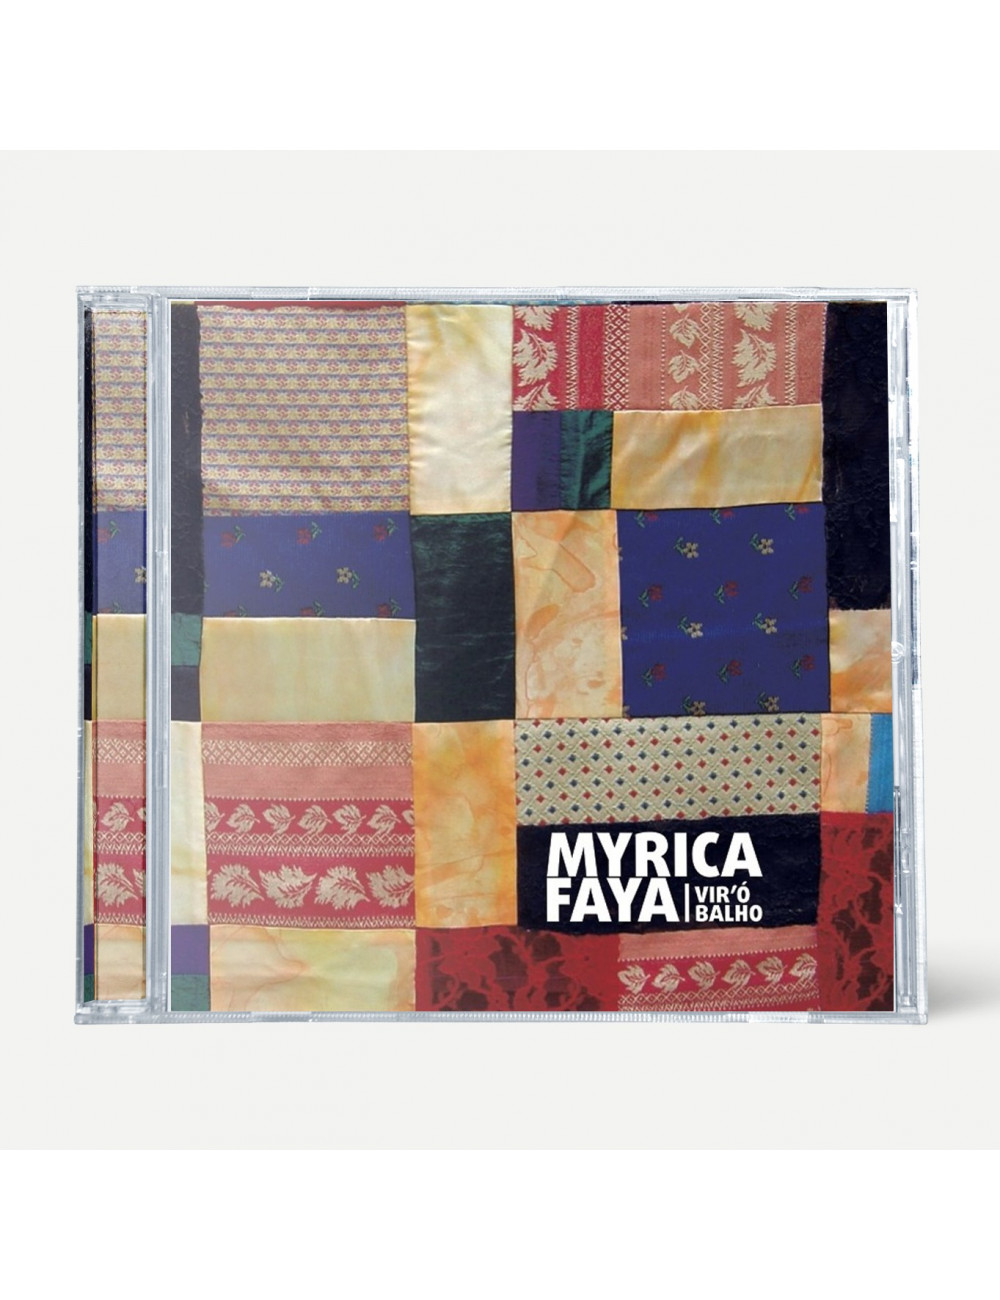 Myrica Faya "Vir'ó Balho" (CD)